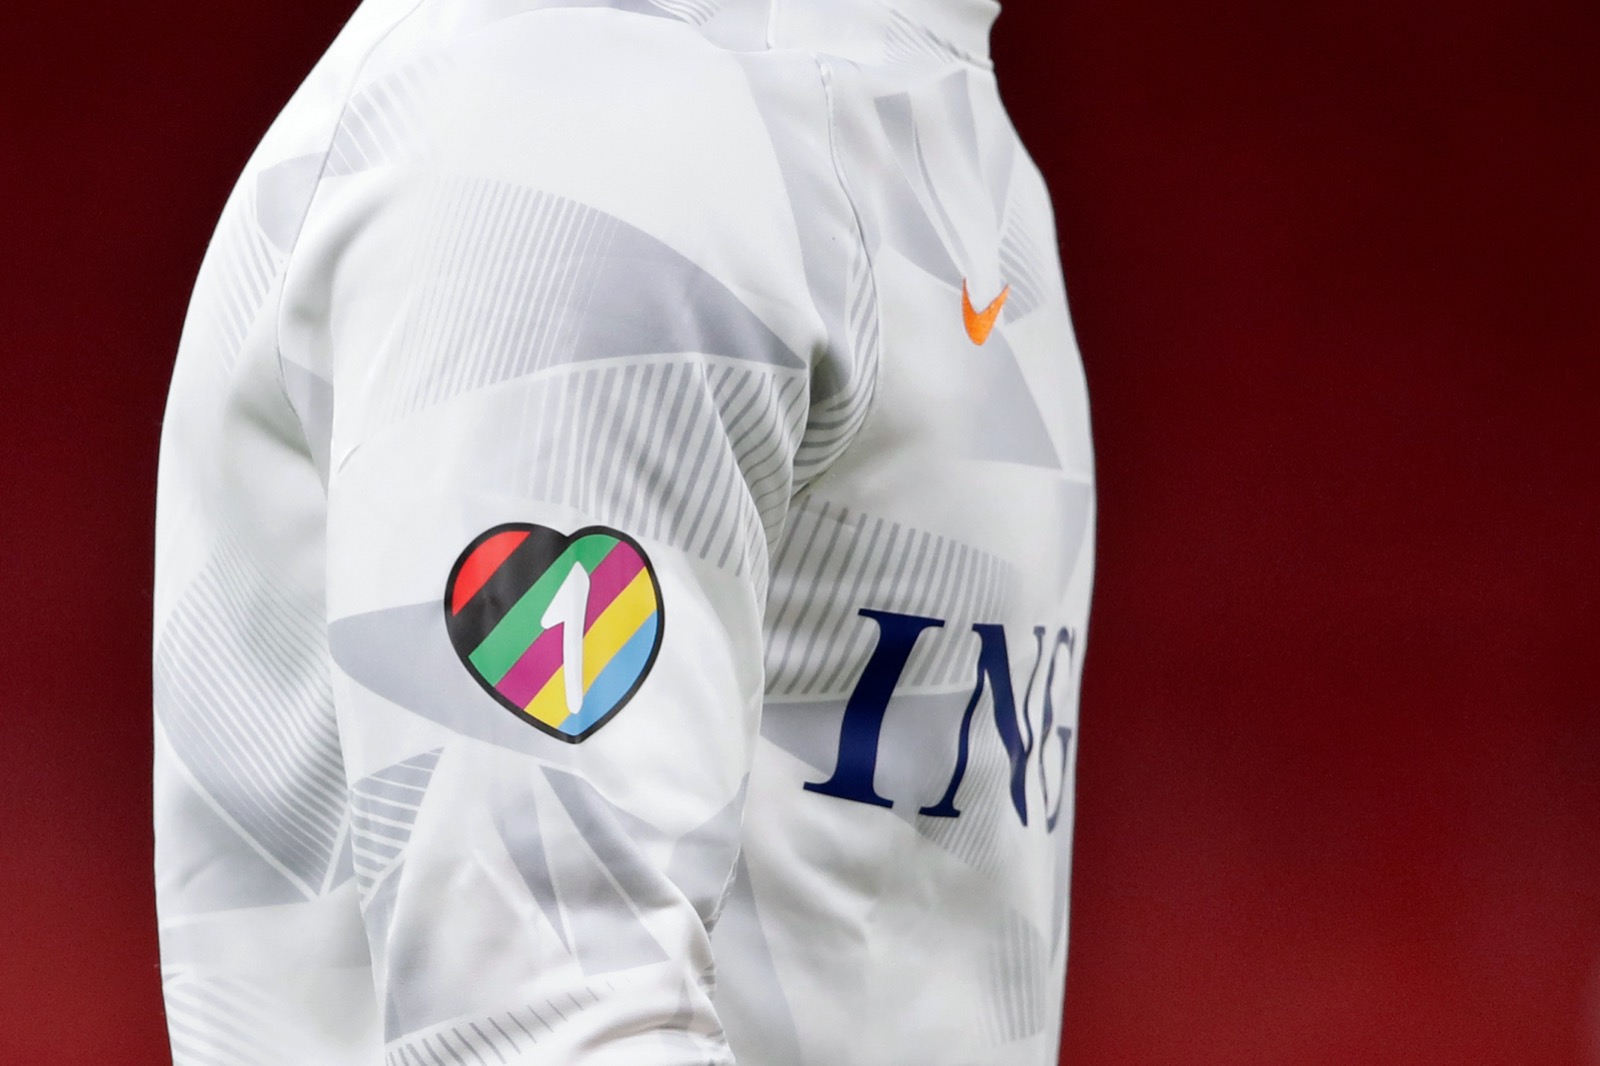 Imitatie Indiener Bloesem OnsOranje on Twitter: "1️⃣🧡 De spelers van het Nederlands elftal dragen  vanaf vanavond het #OneLove-logo op hun warming up-shirts, vóór verbinding  en dus tegen discriminatie. Iedereen in het voetbal heeft minimaal 1